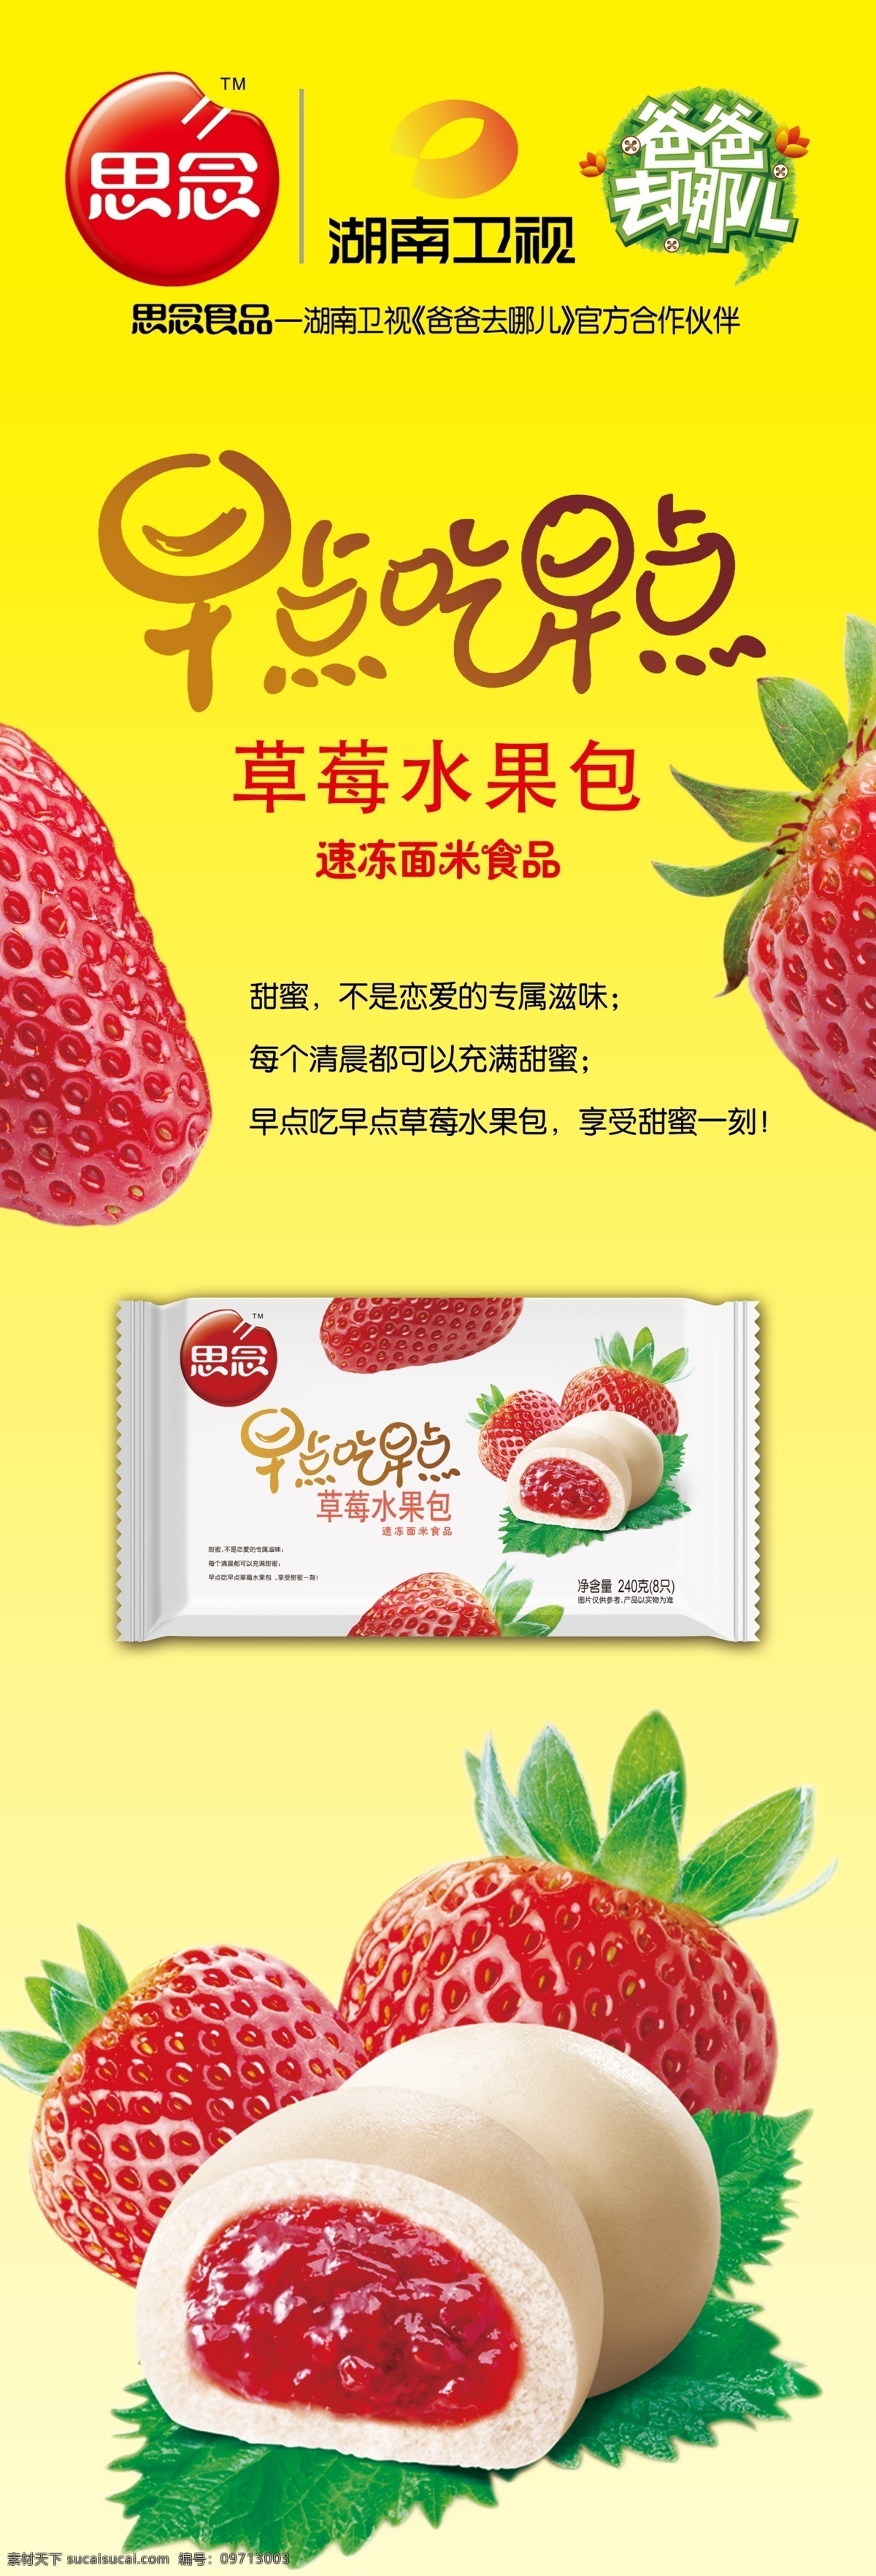 思念 食品 湖南卫视 台标 爸爸去哪儿 草莓 草莓包 包子 馒头 早点吃早点 包装 广告设计模板 源文件